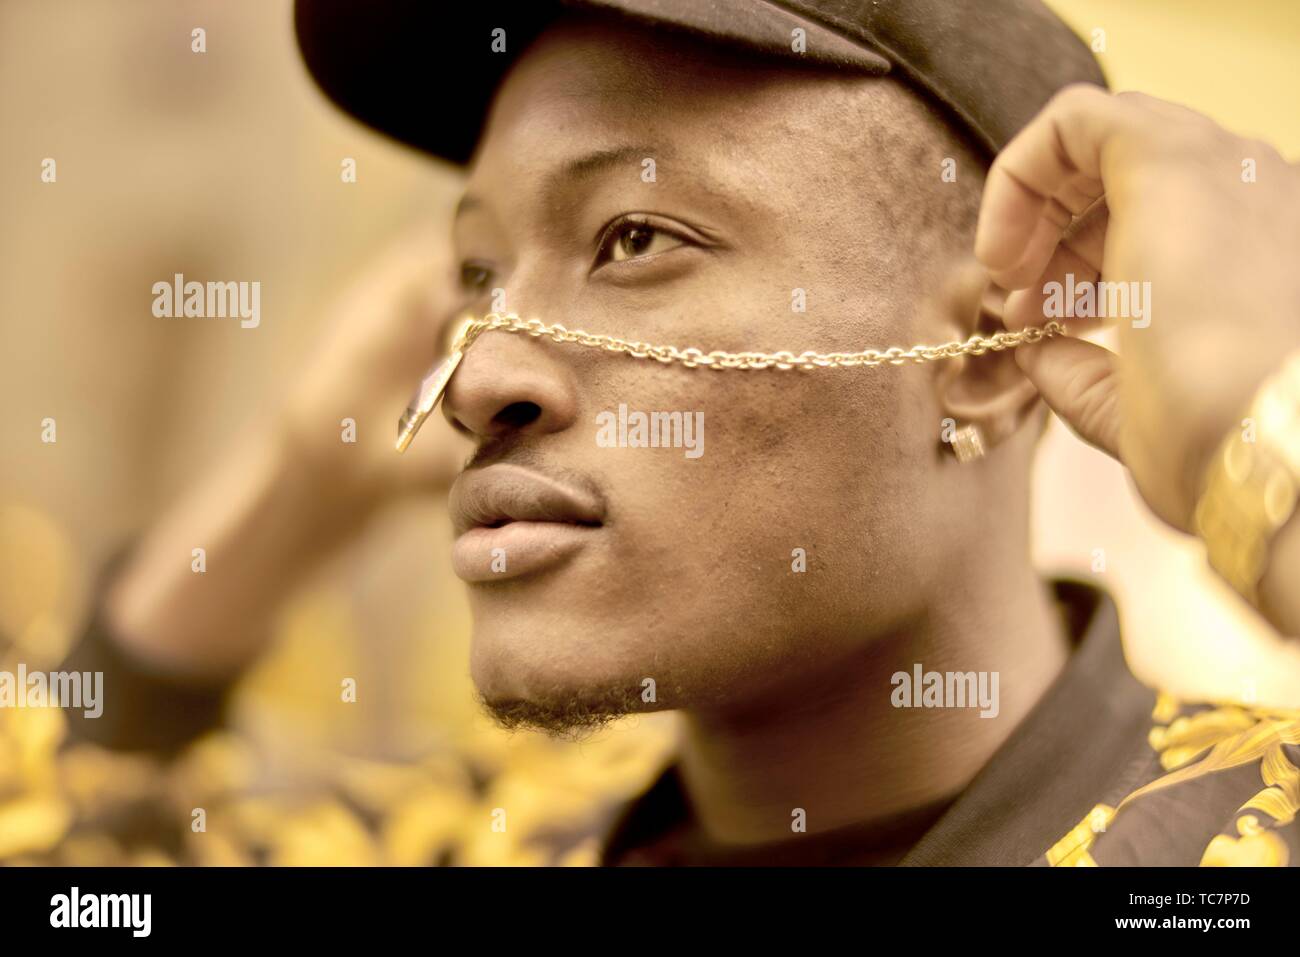 Portrait de l'homme confiant à la chaîne, bijoux en or sur le visage, d' esprit positif, la santé, le statut social, à Munich, Allemagne Photo Stock  - Alamy